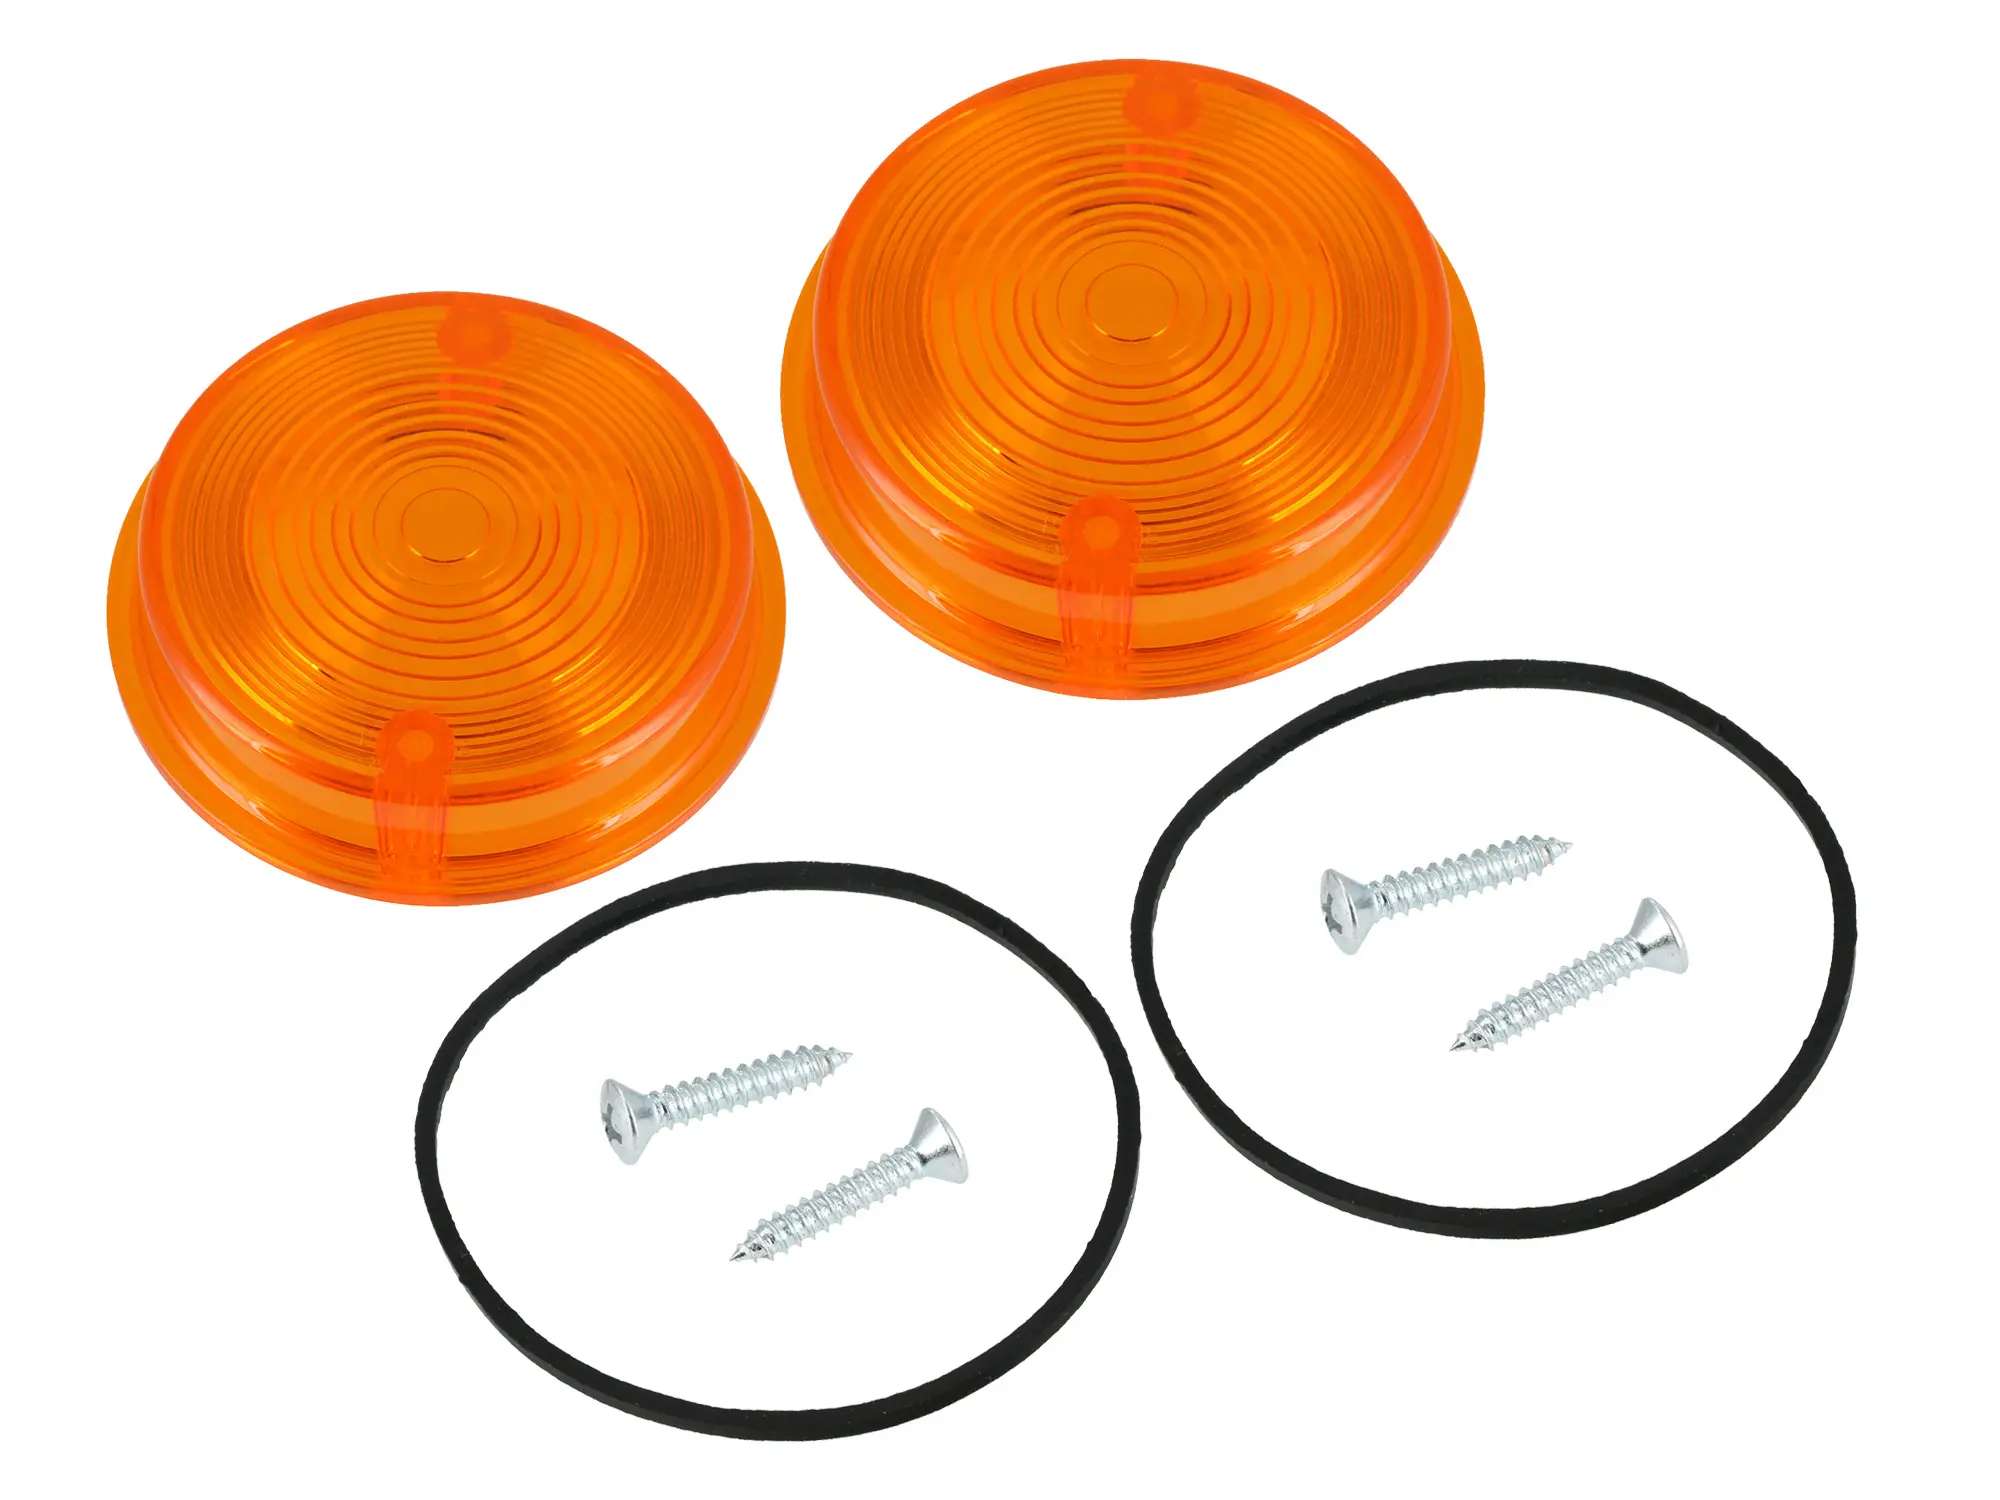 Set: 2x Blinkerkappe hinten, rund, orange inkl. Gummidichtring + Schrauben - für Simson S50, S51, S70, SR50, SR80 - MZ ETZ, TS, Art.-Nr.: GP10068602 - Bild 1